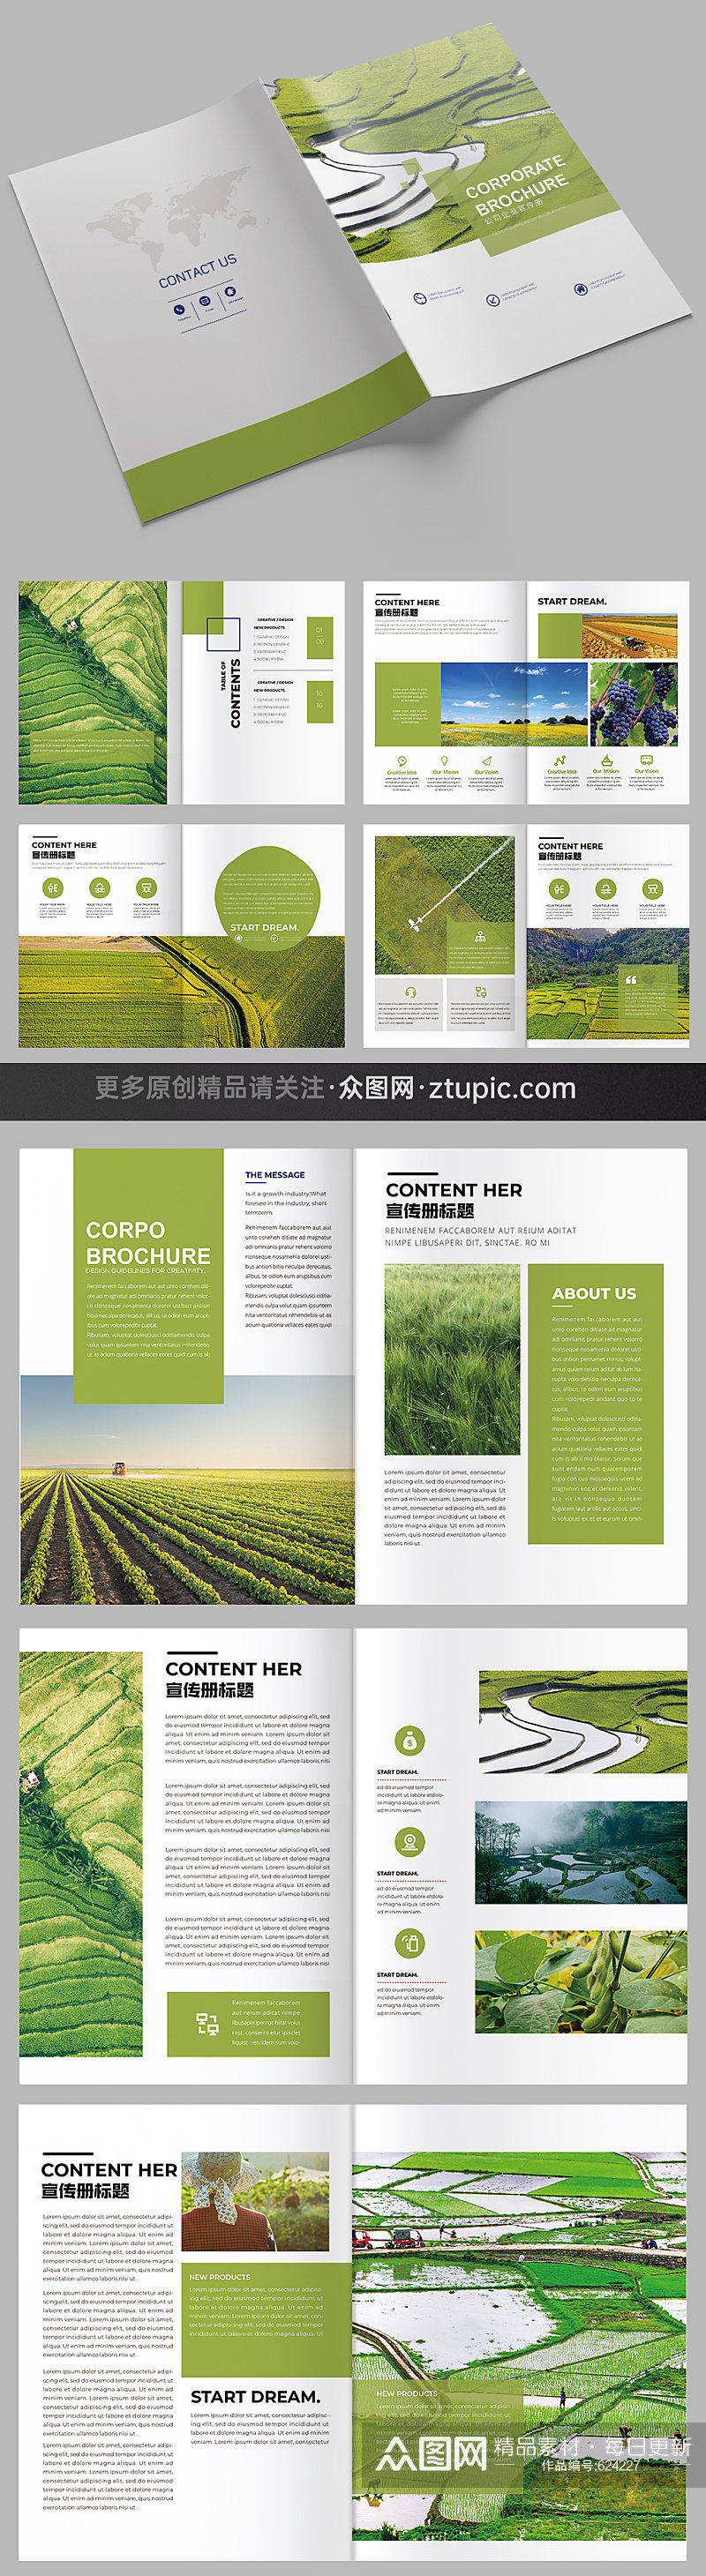 农业画册排版水稻稻香农产品有机农业画册素材